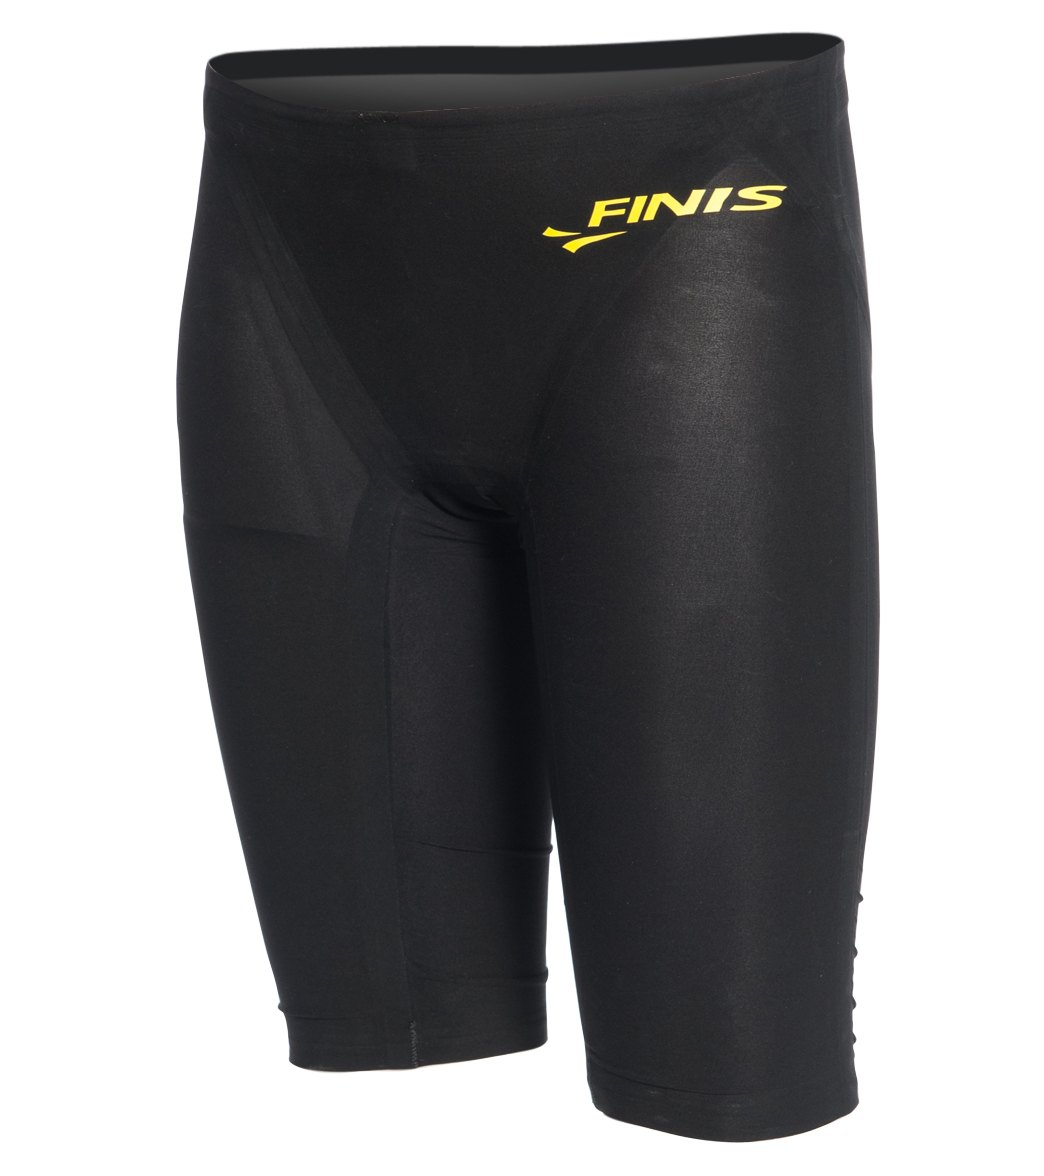 Finis Boys' Vapor Jammer Swimsuit - Black 24 - Swimoutlet.com